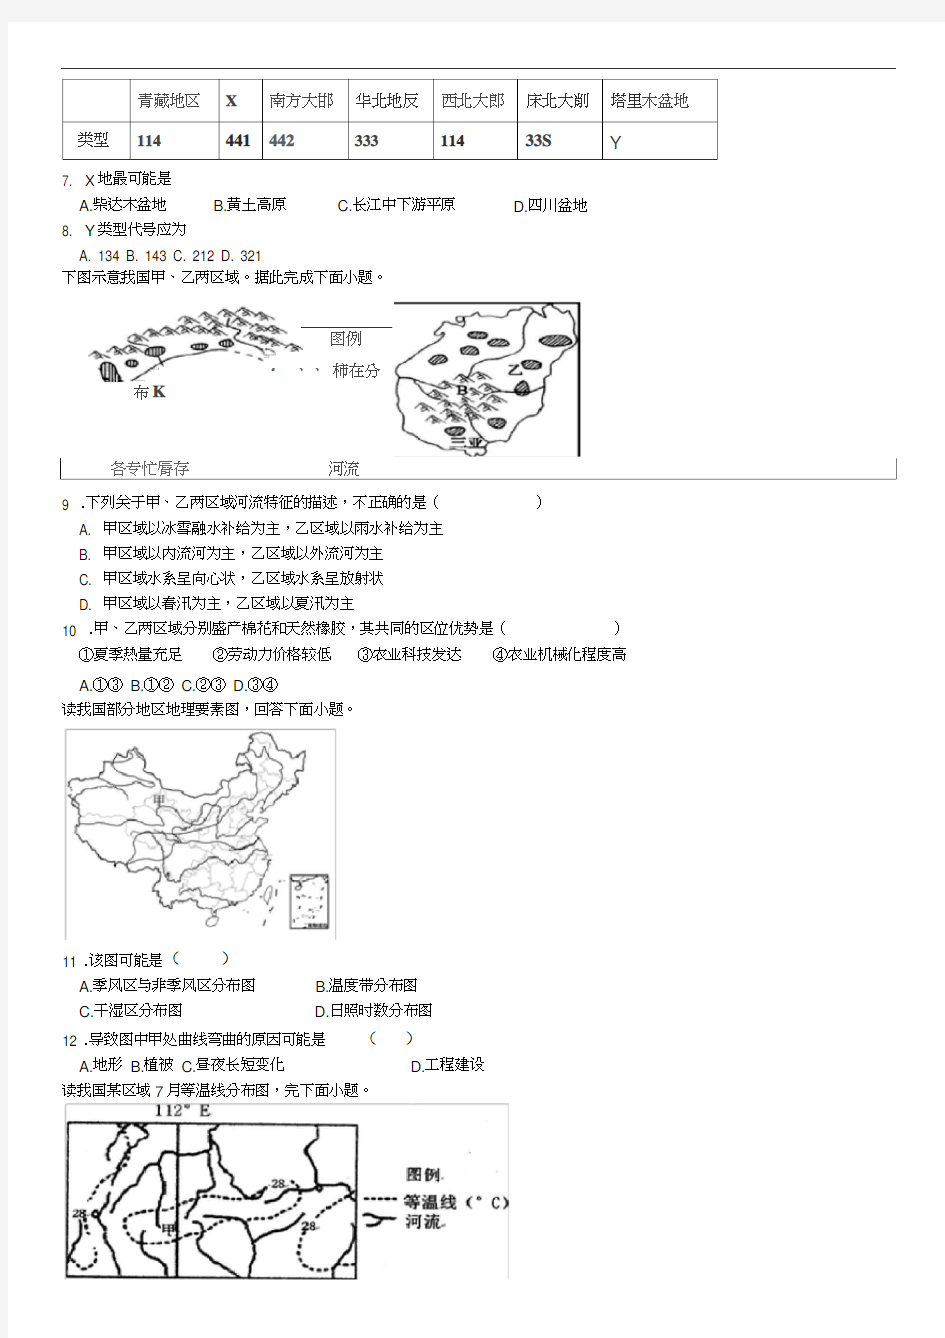 中国地理练习题(20201005074130)